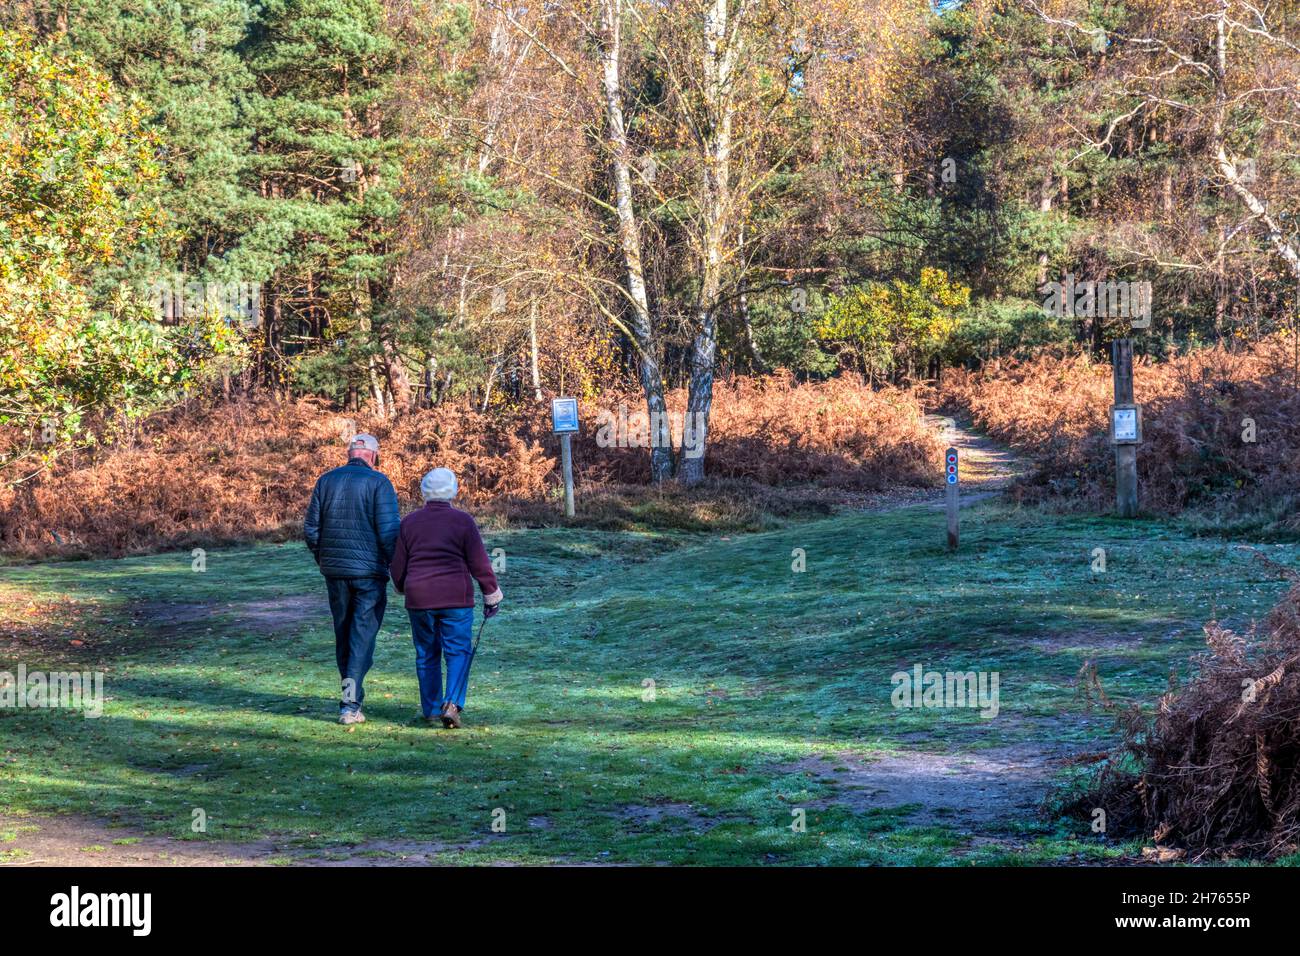 Un couple senior actif part pour une promenade à travers les bois dans la réserve naturelle nationale de Dersingham Bog, le jour de l'automne. Banque D'Images